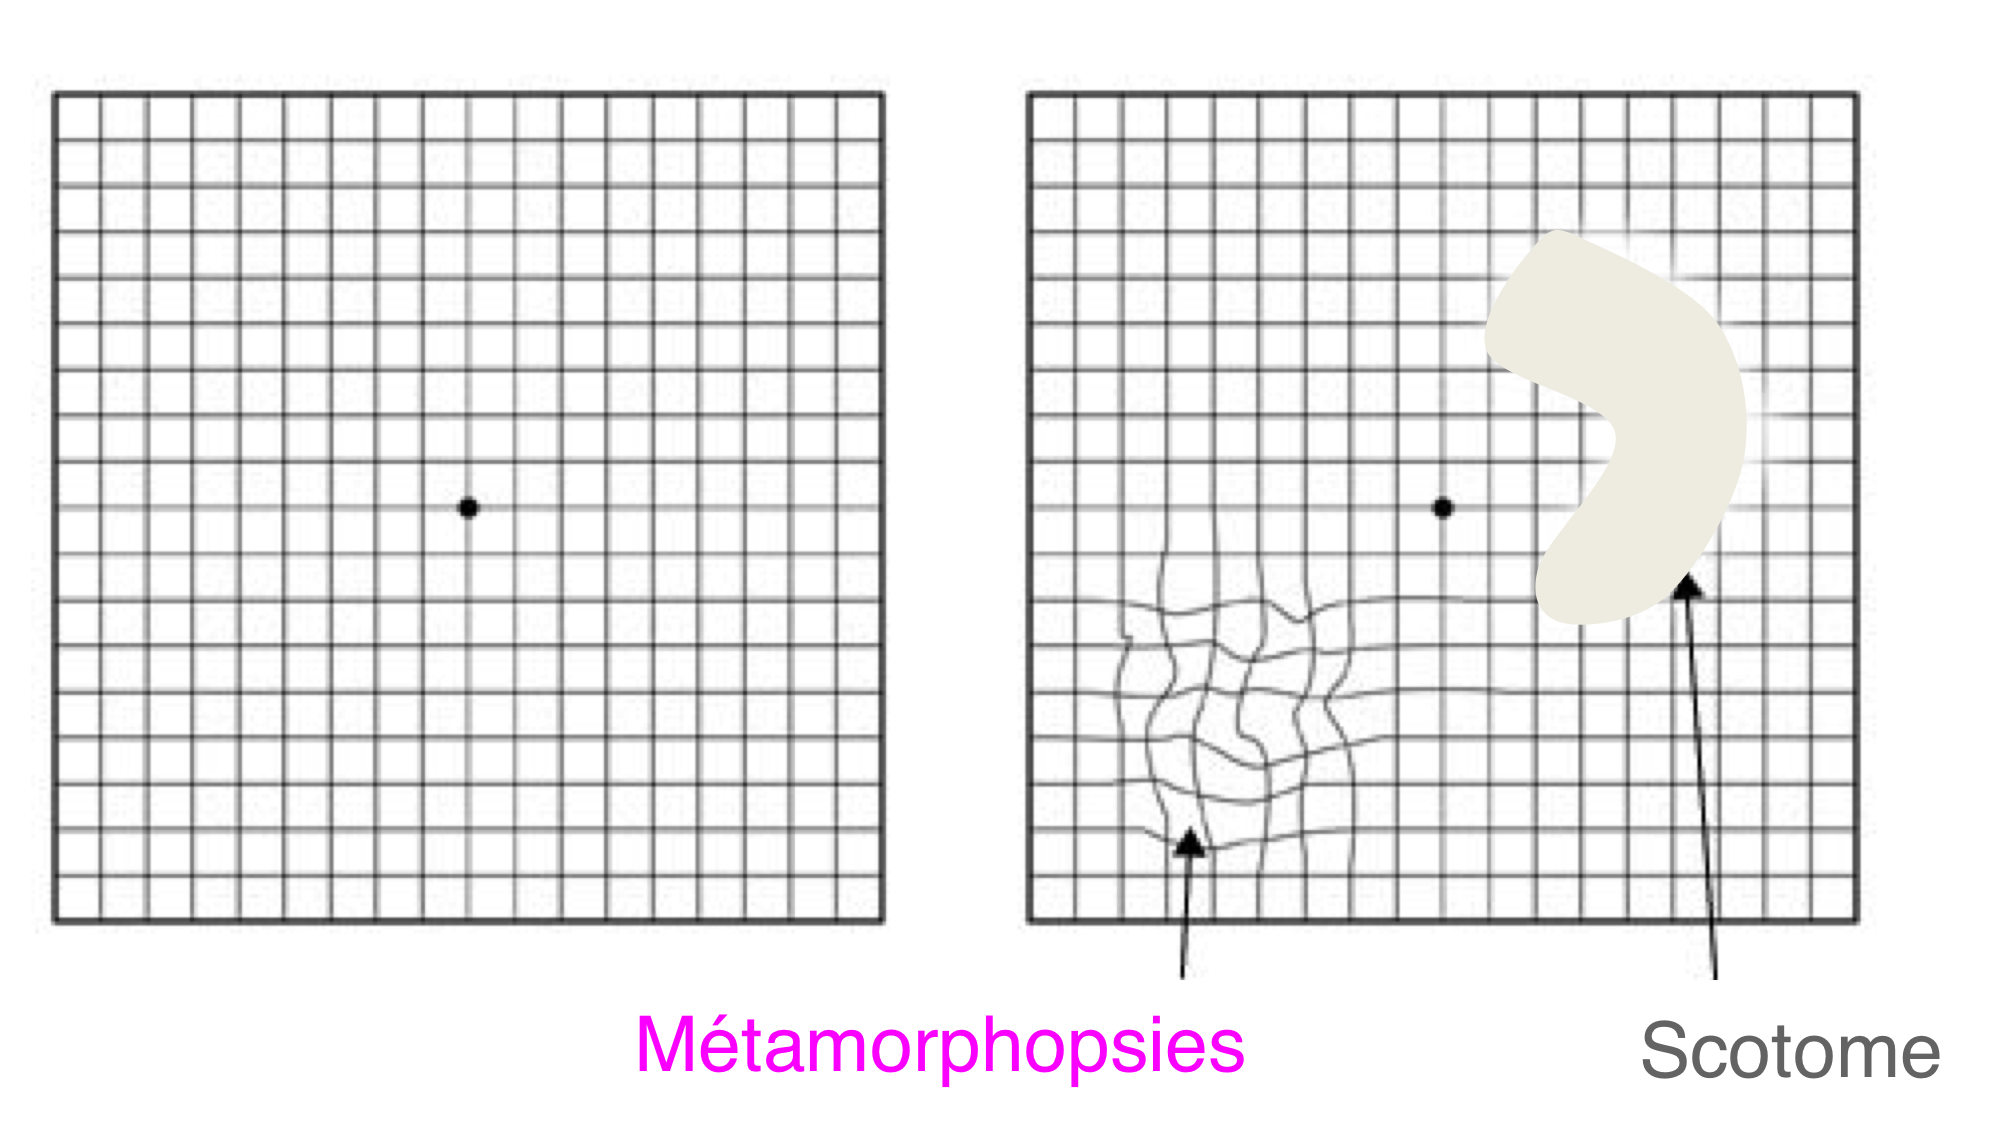 La DMLA peut être à l'origine de déformations ondulantes des lignes droites (métamorphopsies) et/ou de zones de vision centrale floues (scotomes) que le test de la grille d'Amsler peut contribuer à dépister